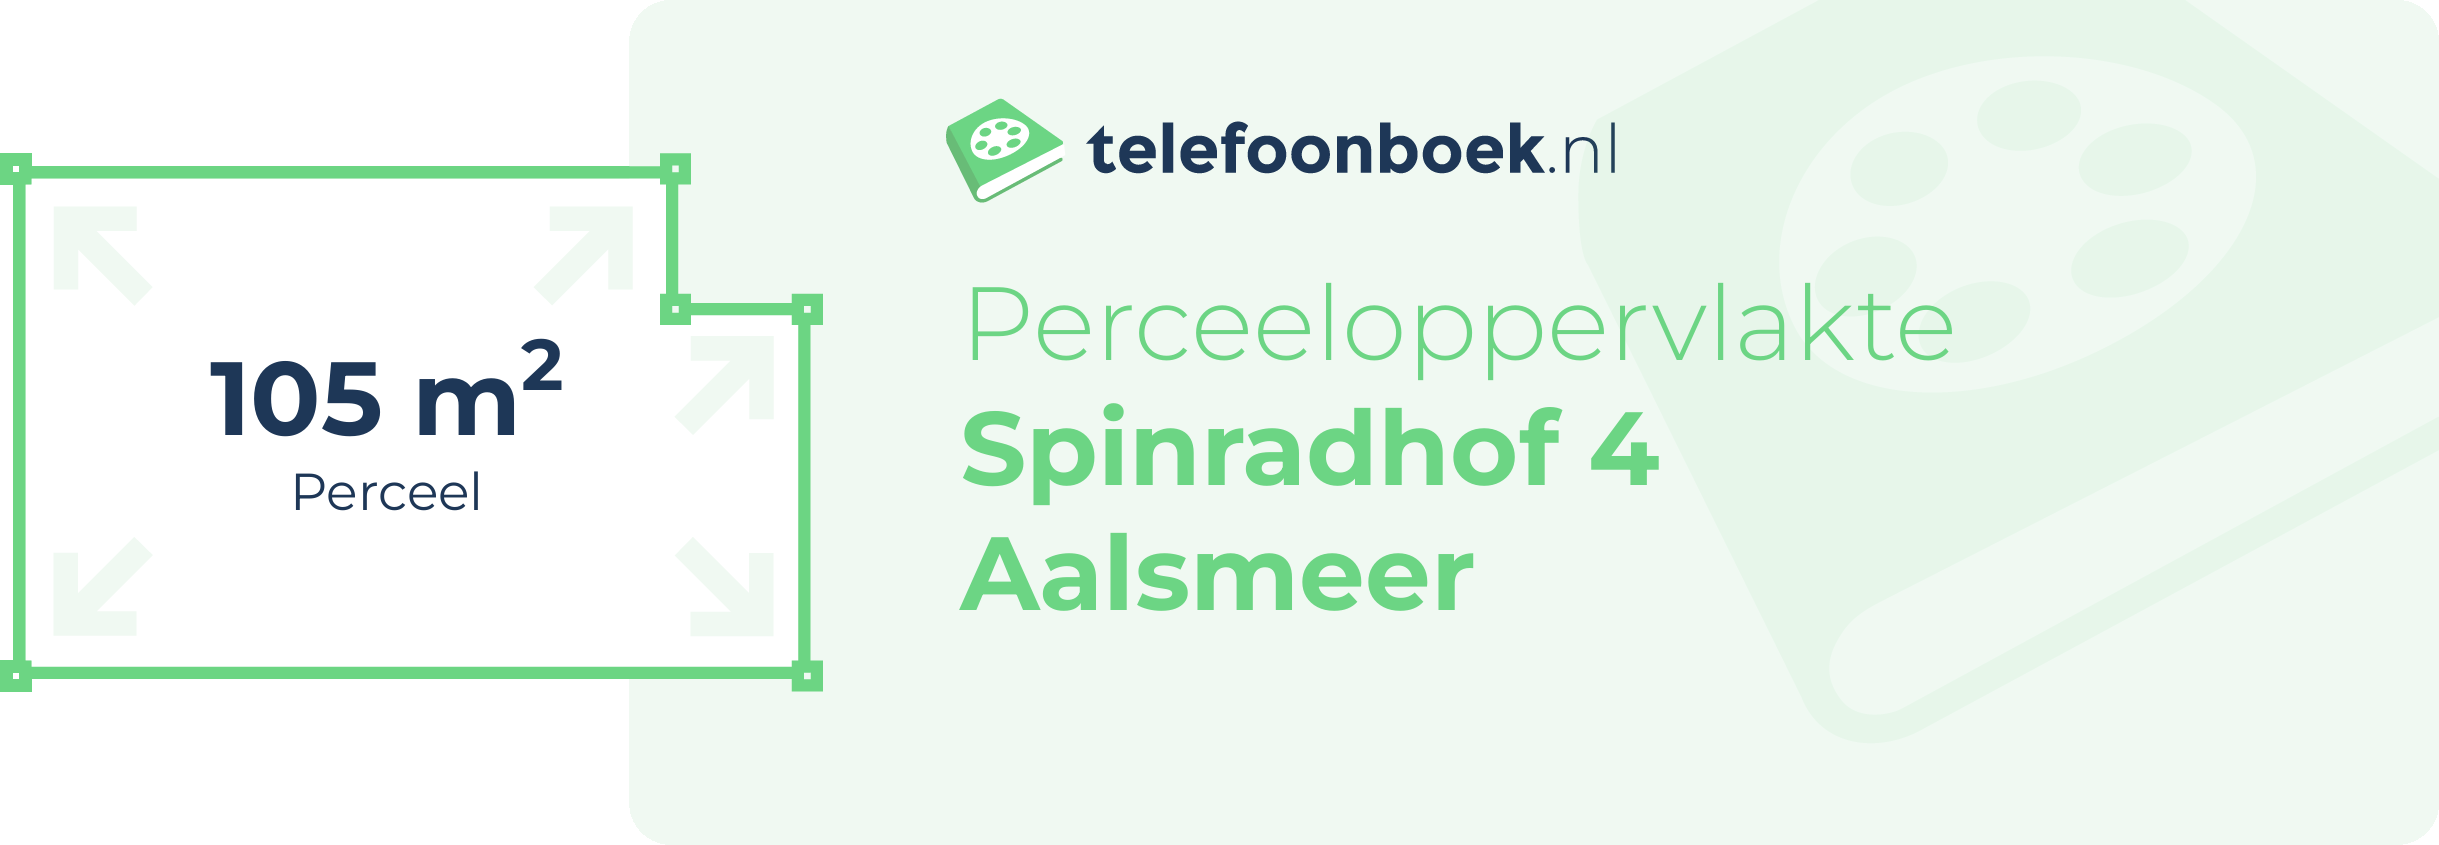 Perceeloppervlakte Spinradhof 4 Aalsmeer